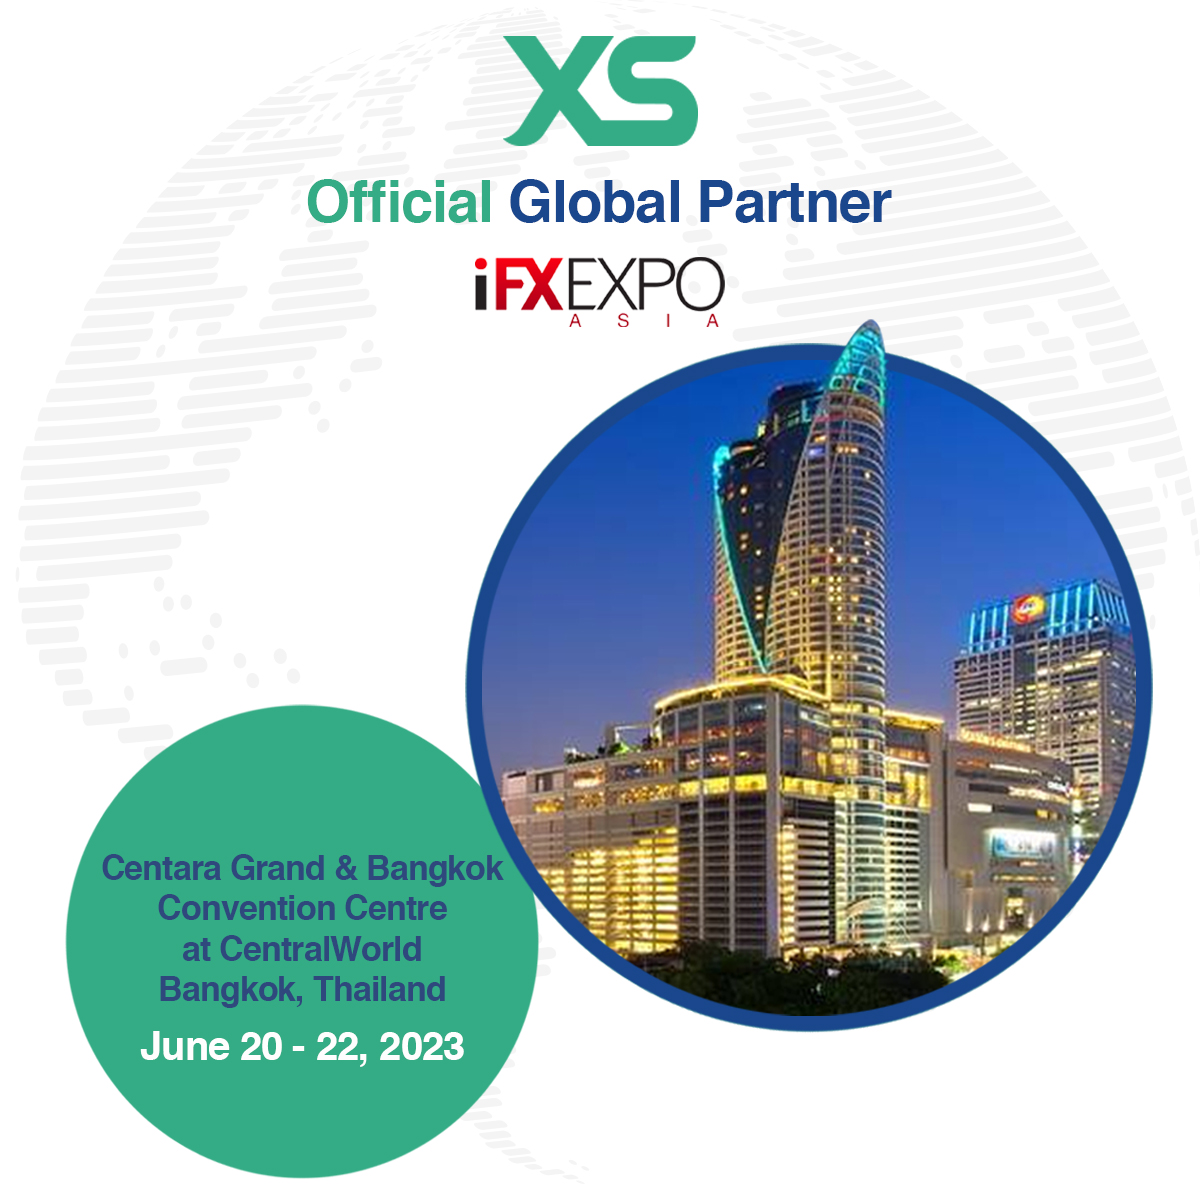 مجموعة إكس أس تصبح الشريك العالمي الرسمي لمعرض أي أف إكس في بانكوك